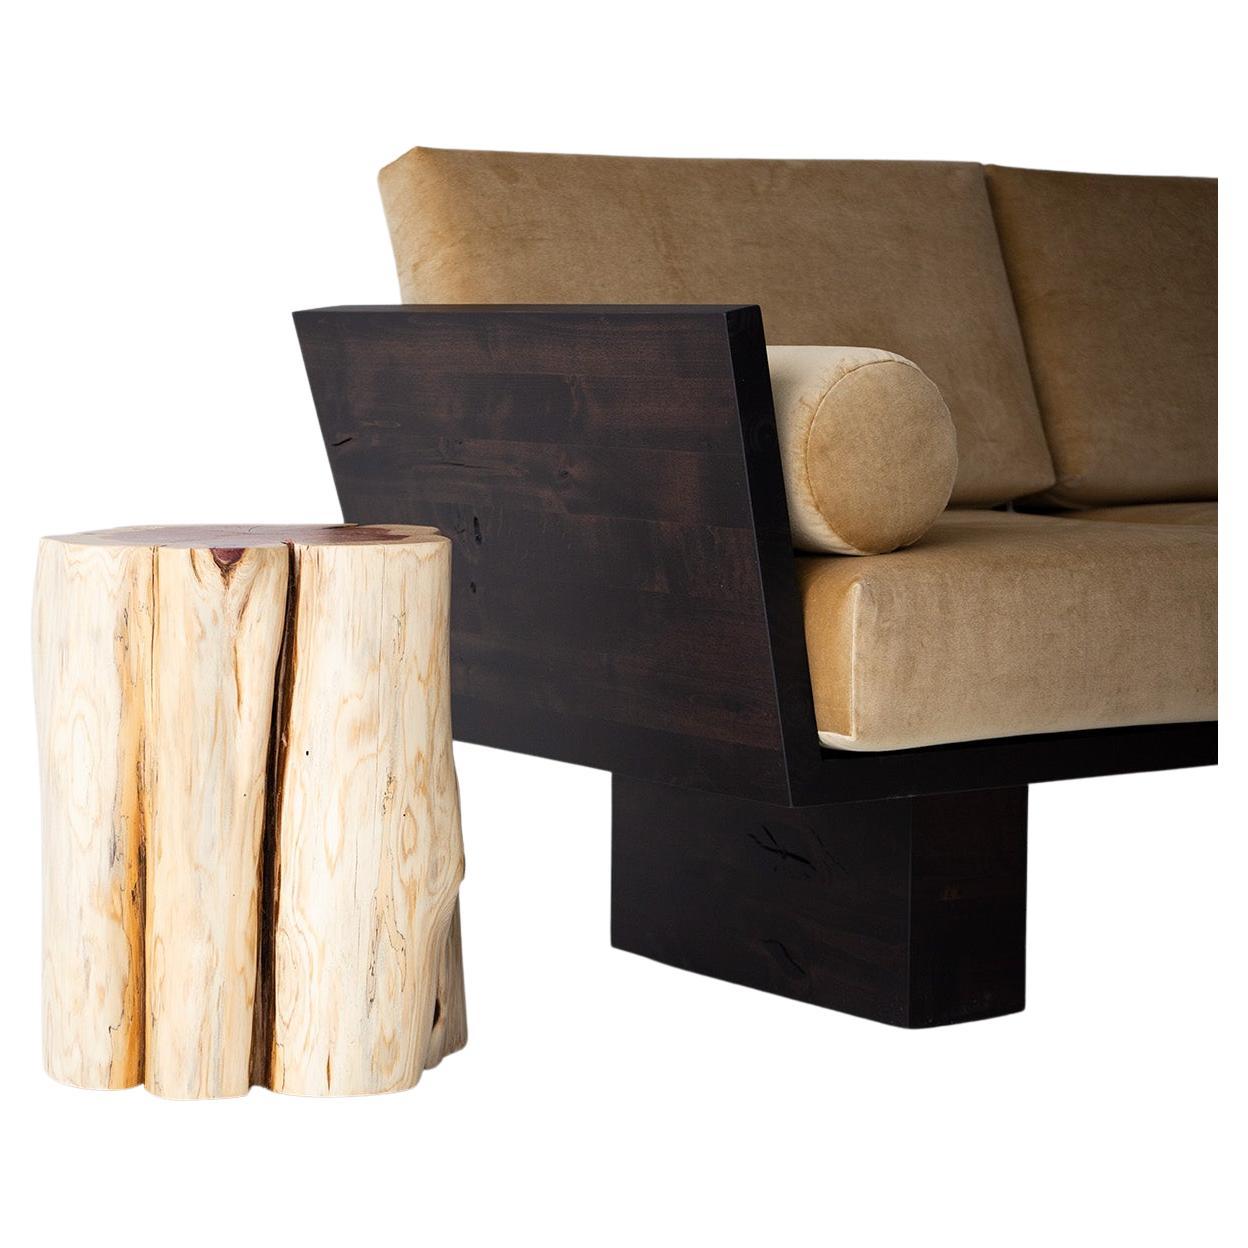 Bertu Wood Side Tables, Natural Wood Side Table, Red Cedar